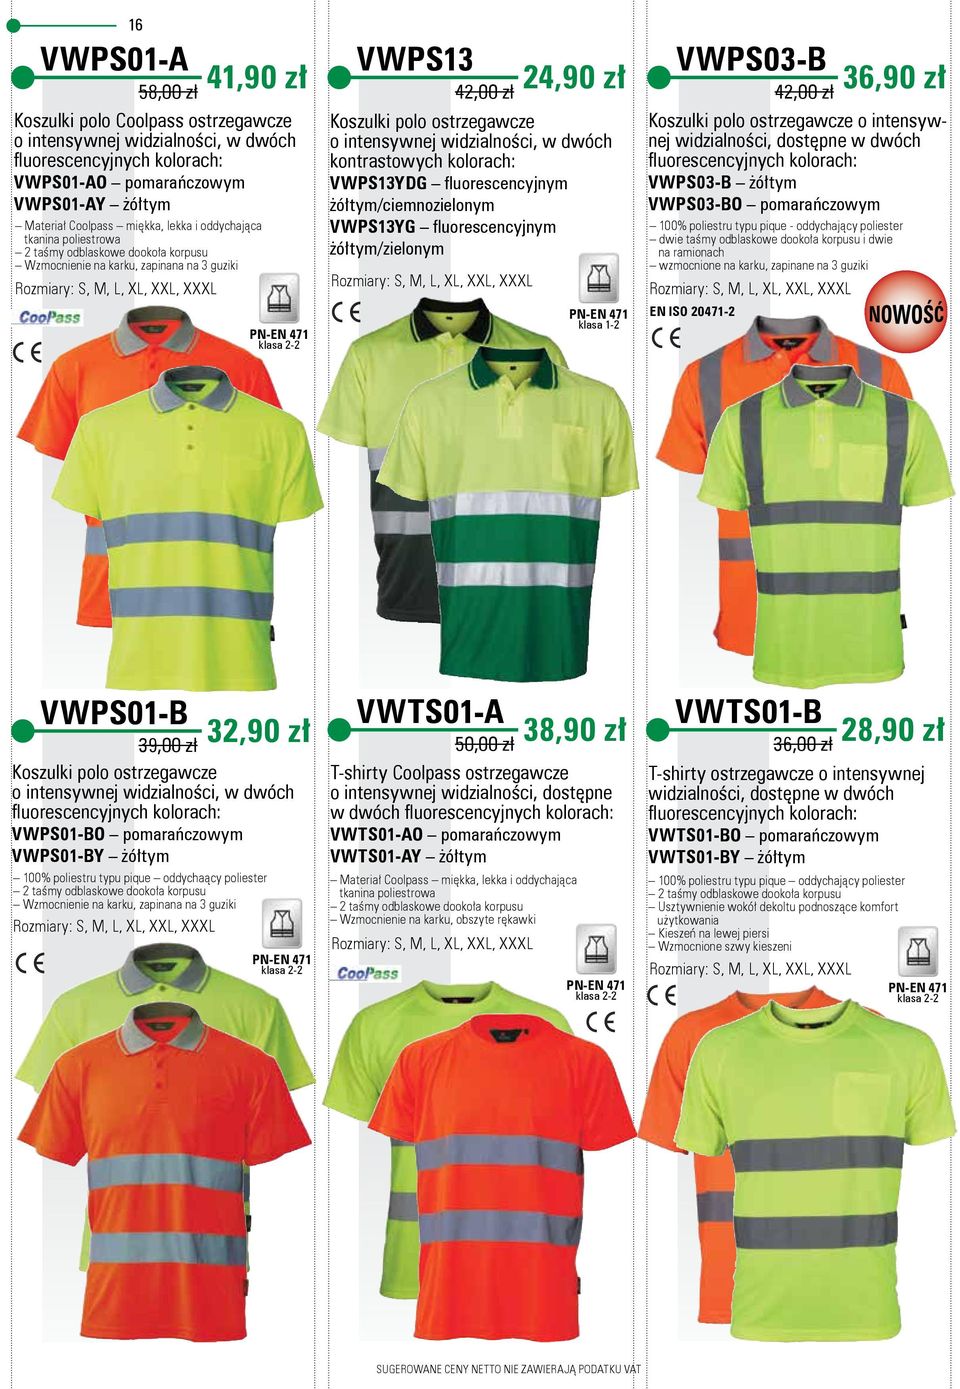 kolorach: VWPS13YDG fl uorescencyjnym żółtym/ciemnozielonym VWPS13YG fl uorescencyjnym żółtym/zielonym VWPS03-B 42,00 zł 36,90 zł Koszulki polo ostrzegawcze o intensywnej widzialności, dostępne w